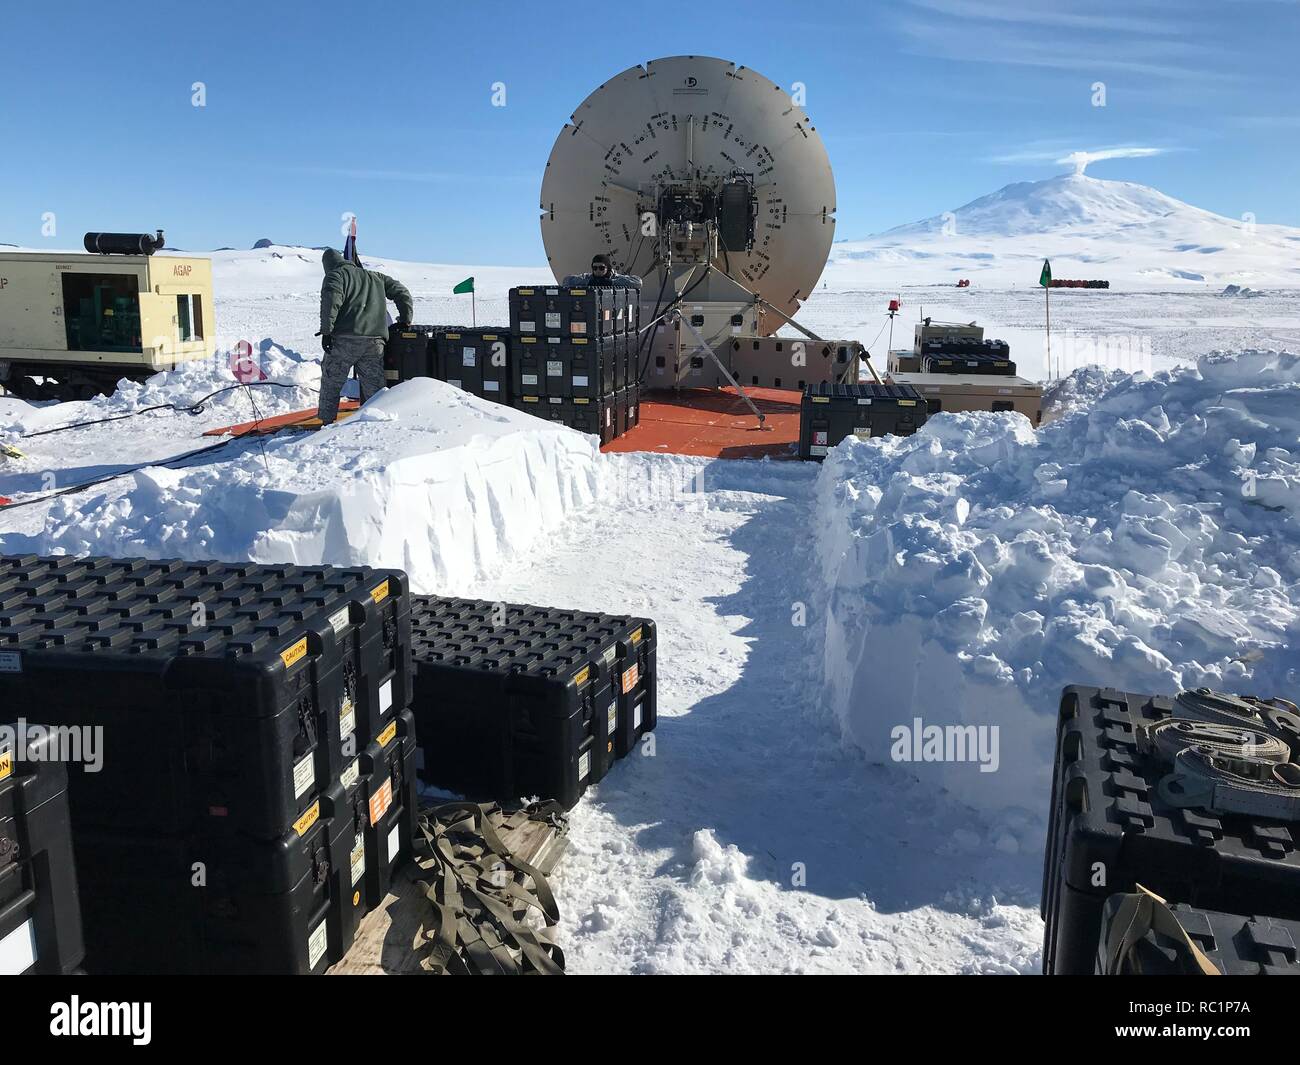 Einer einsetzbaren Satelliten, die zur 263Rd Combat Communications Squadron mit der North Carolina Air National Guard ist bis auf ein Eis, setzen Sie das Feld für den Einsatz während der Operation Deep Freeze (ODF), der McMurdo Station, Antarktis, Dez. 6, 2018. ODF ist eine militärische Mission zur Unterstützung der National Science Foundation auf dem ganzen Kontinent der Antarktis, Luft, Land, Meer und Unterstützung der McMurdo Station. (Foto mit freundlicher Genehmigung von US Air Force Master Sgt. Chris Farnsworth) Stockfoto